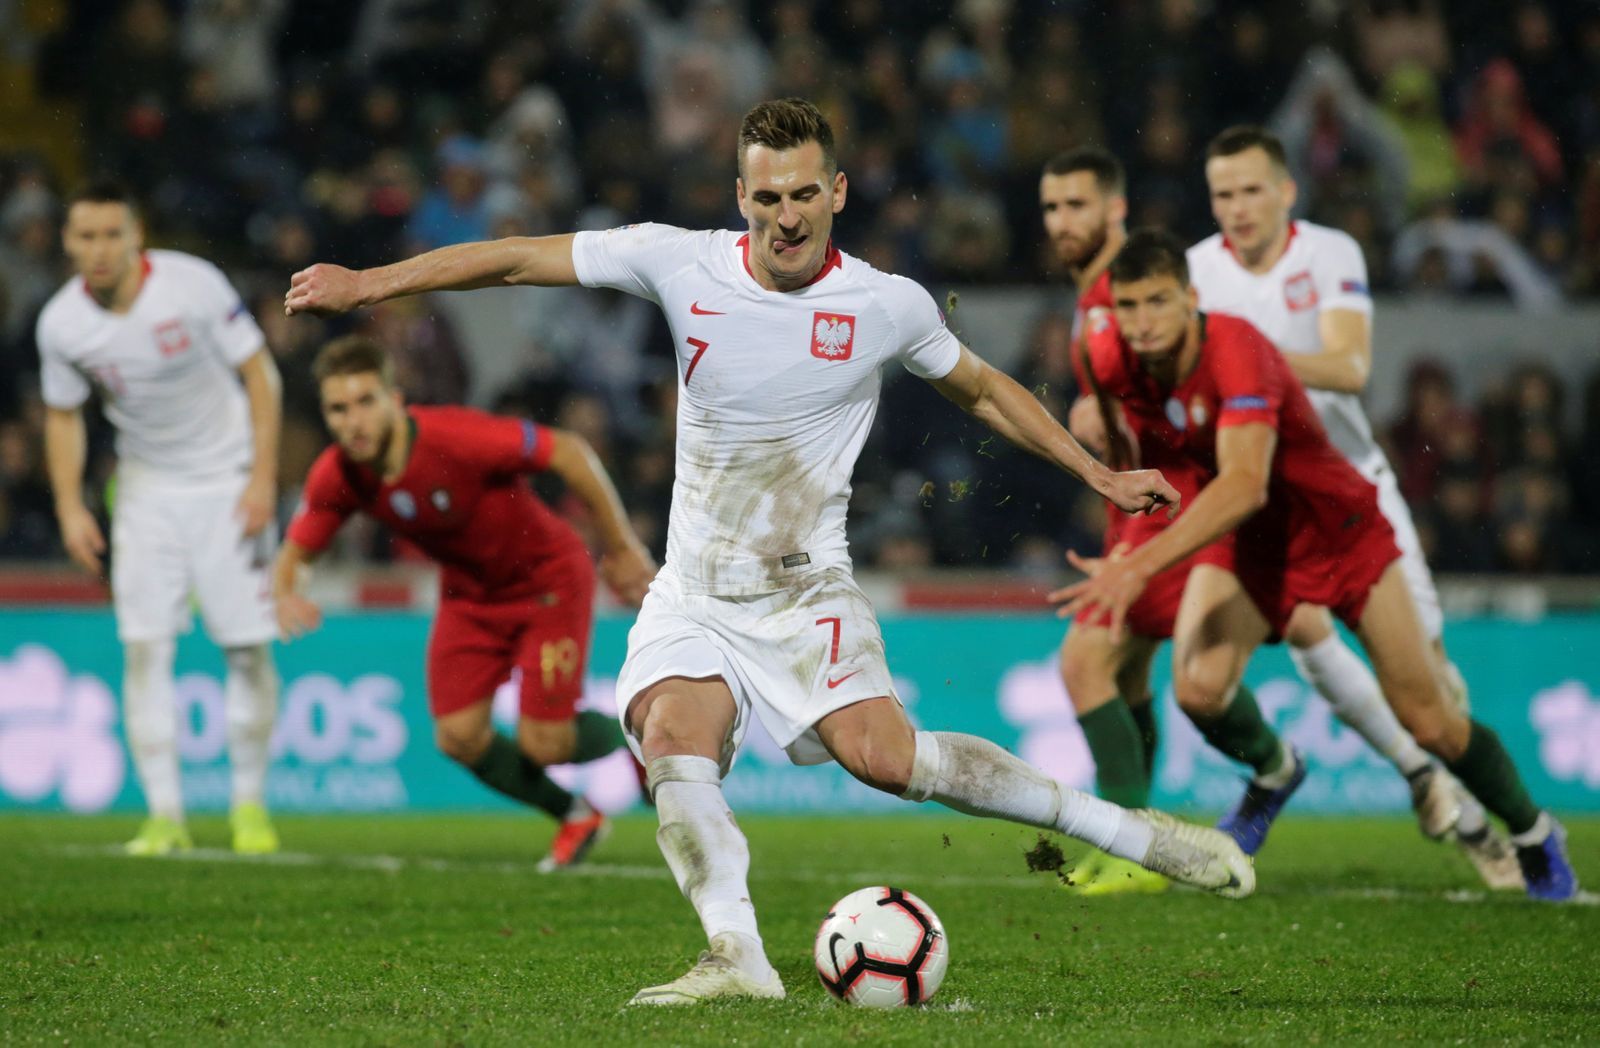 fotbal, Liga národů 2018, Portugalsko - Polsko, Arkadiusz Milik vyrovnává z penalty na konečných 1:1